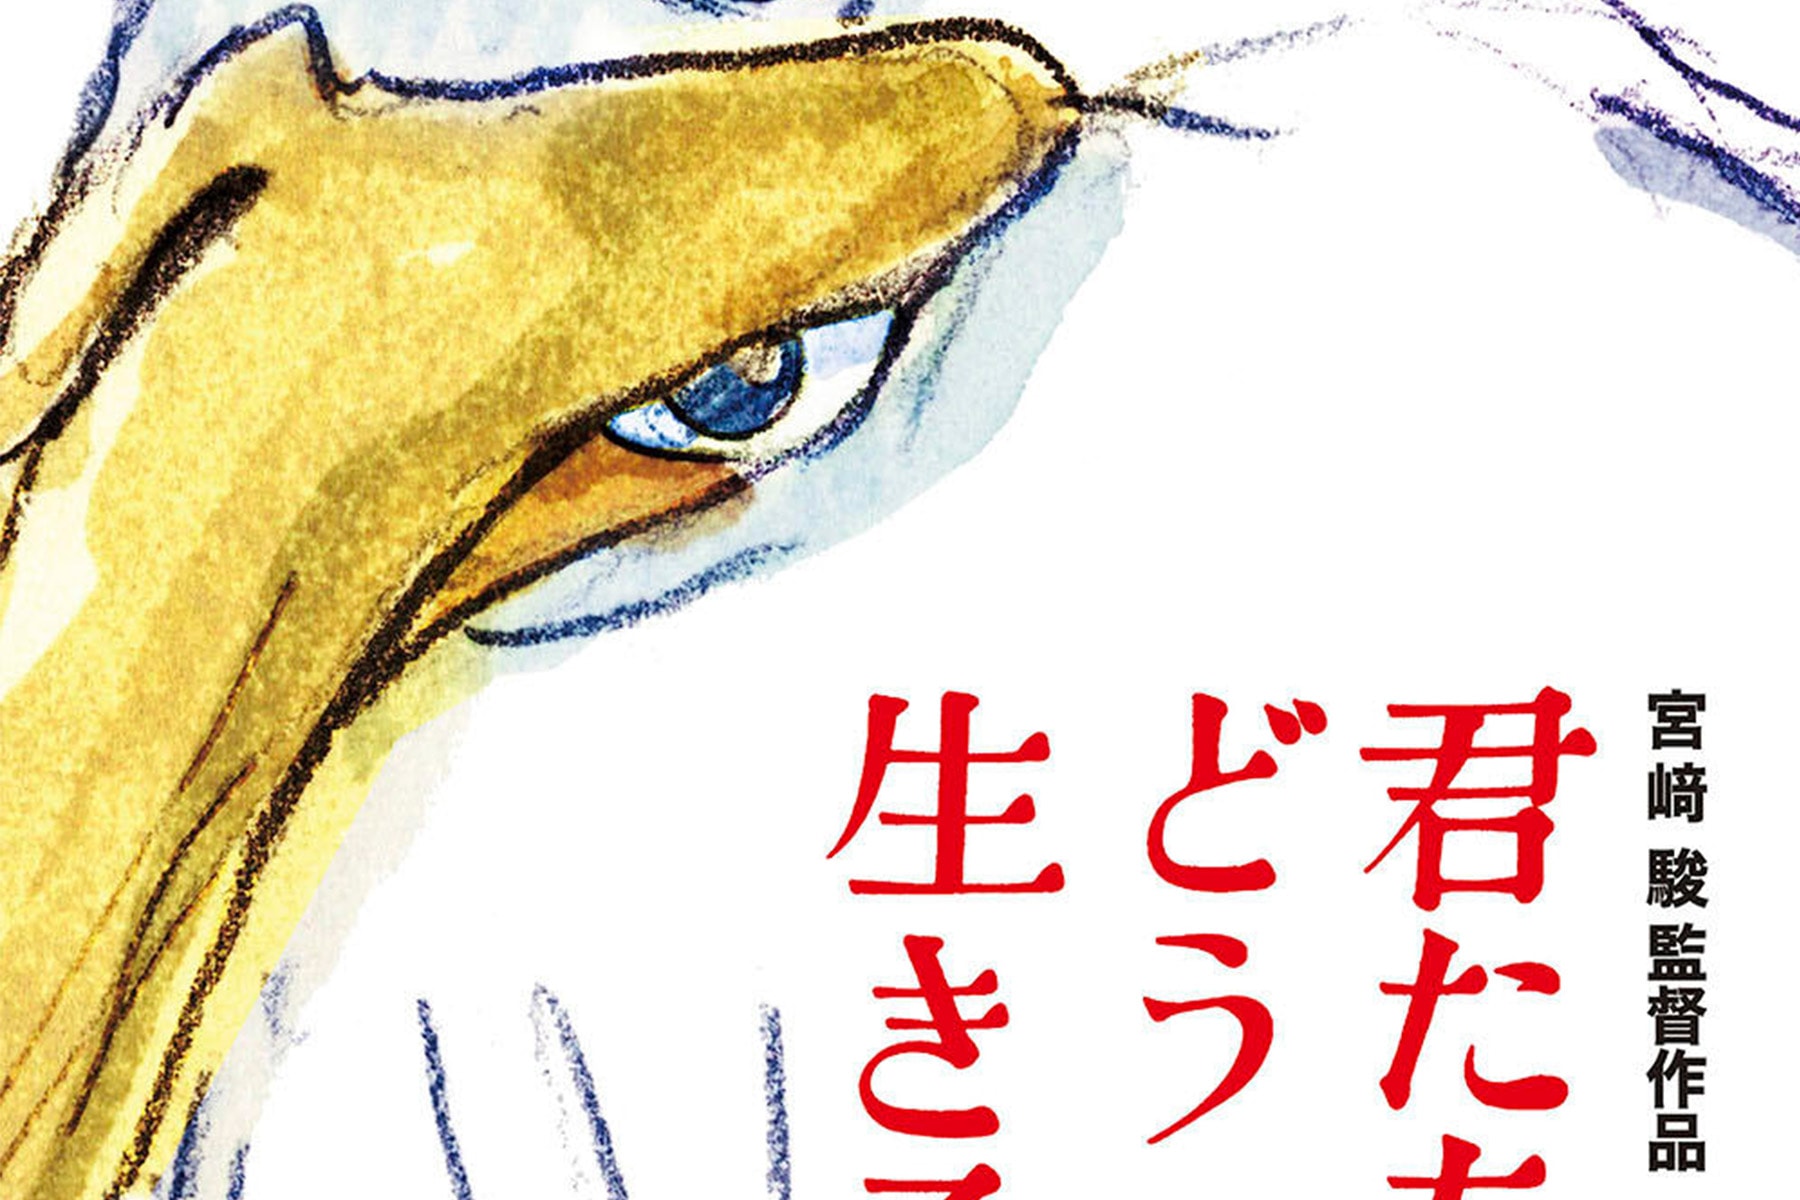 宮崎駿生涯最終作《你想活出怎樣的人生》日本上映首日票房突破 ¥4.65 億日幣